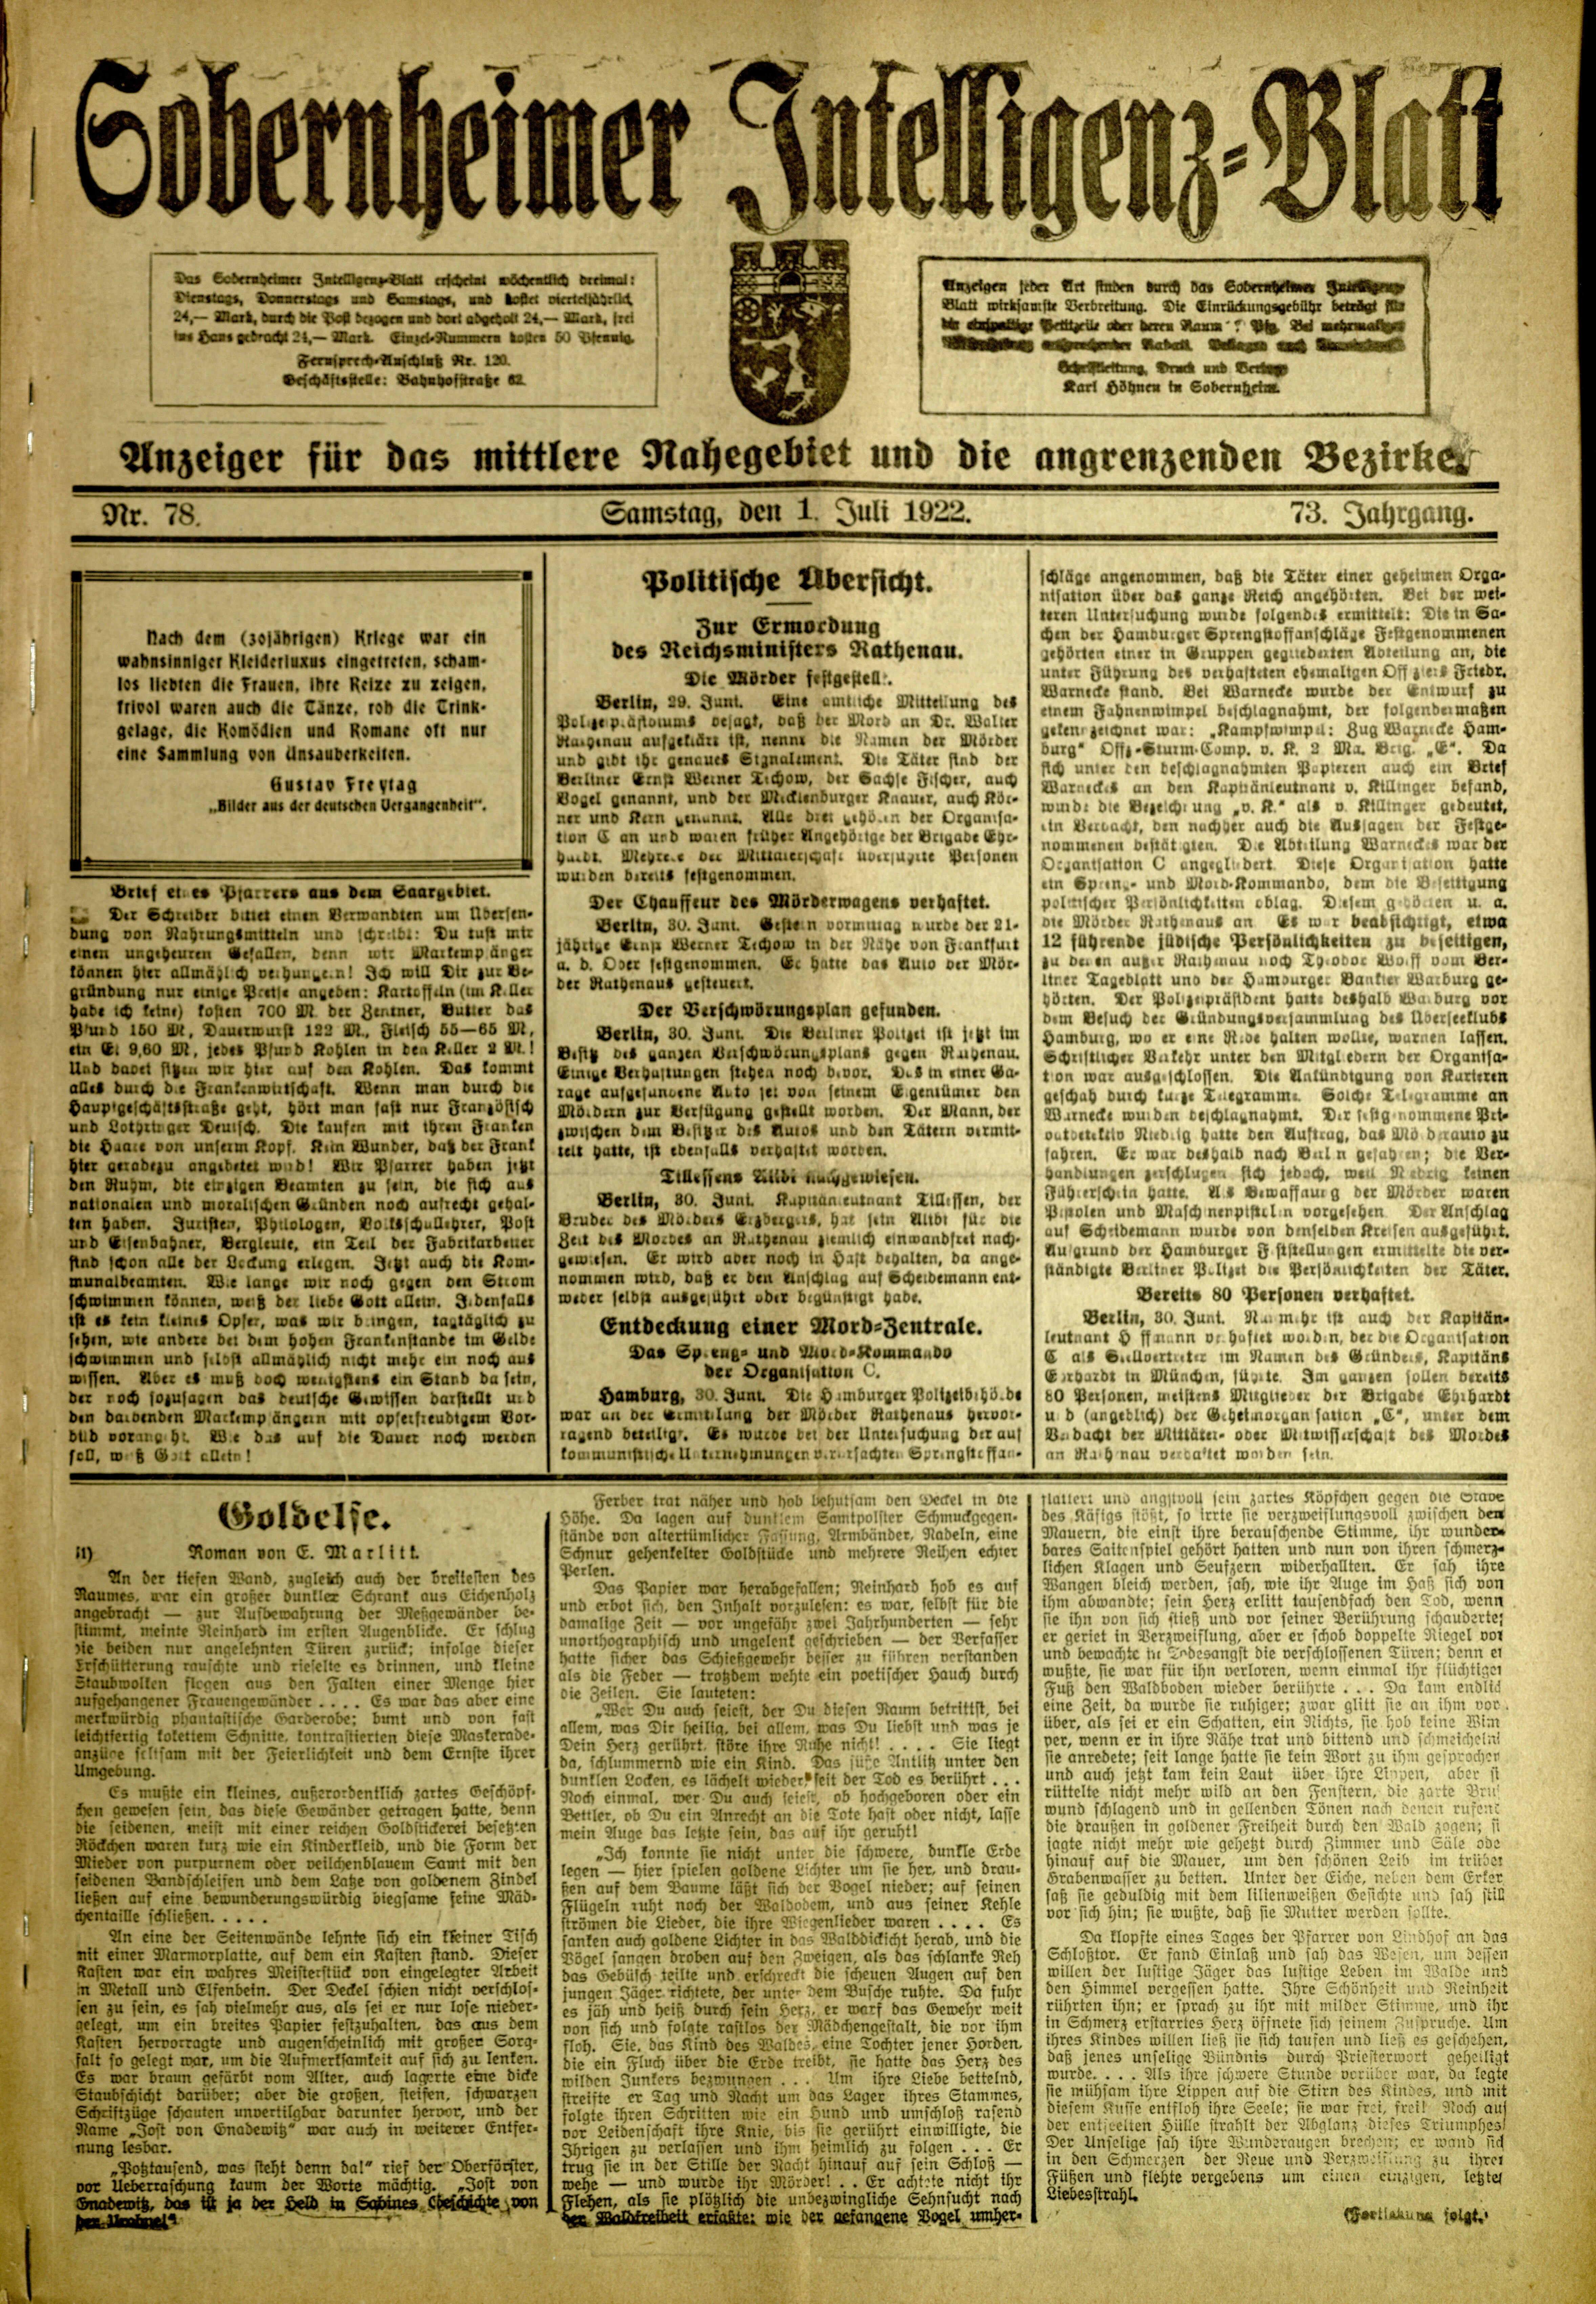 Zeitung: Sobernheimer Intelligenzblatt; Juli 1922, Jg. 73 Nr. 78 (Heimatmuseum Bad Sobernheim CC BY-NC-SA)